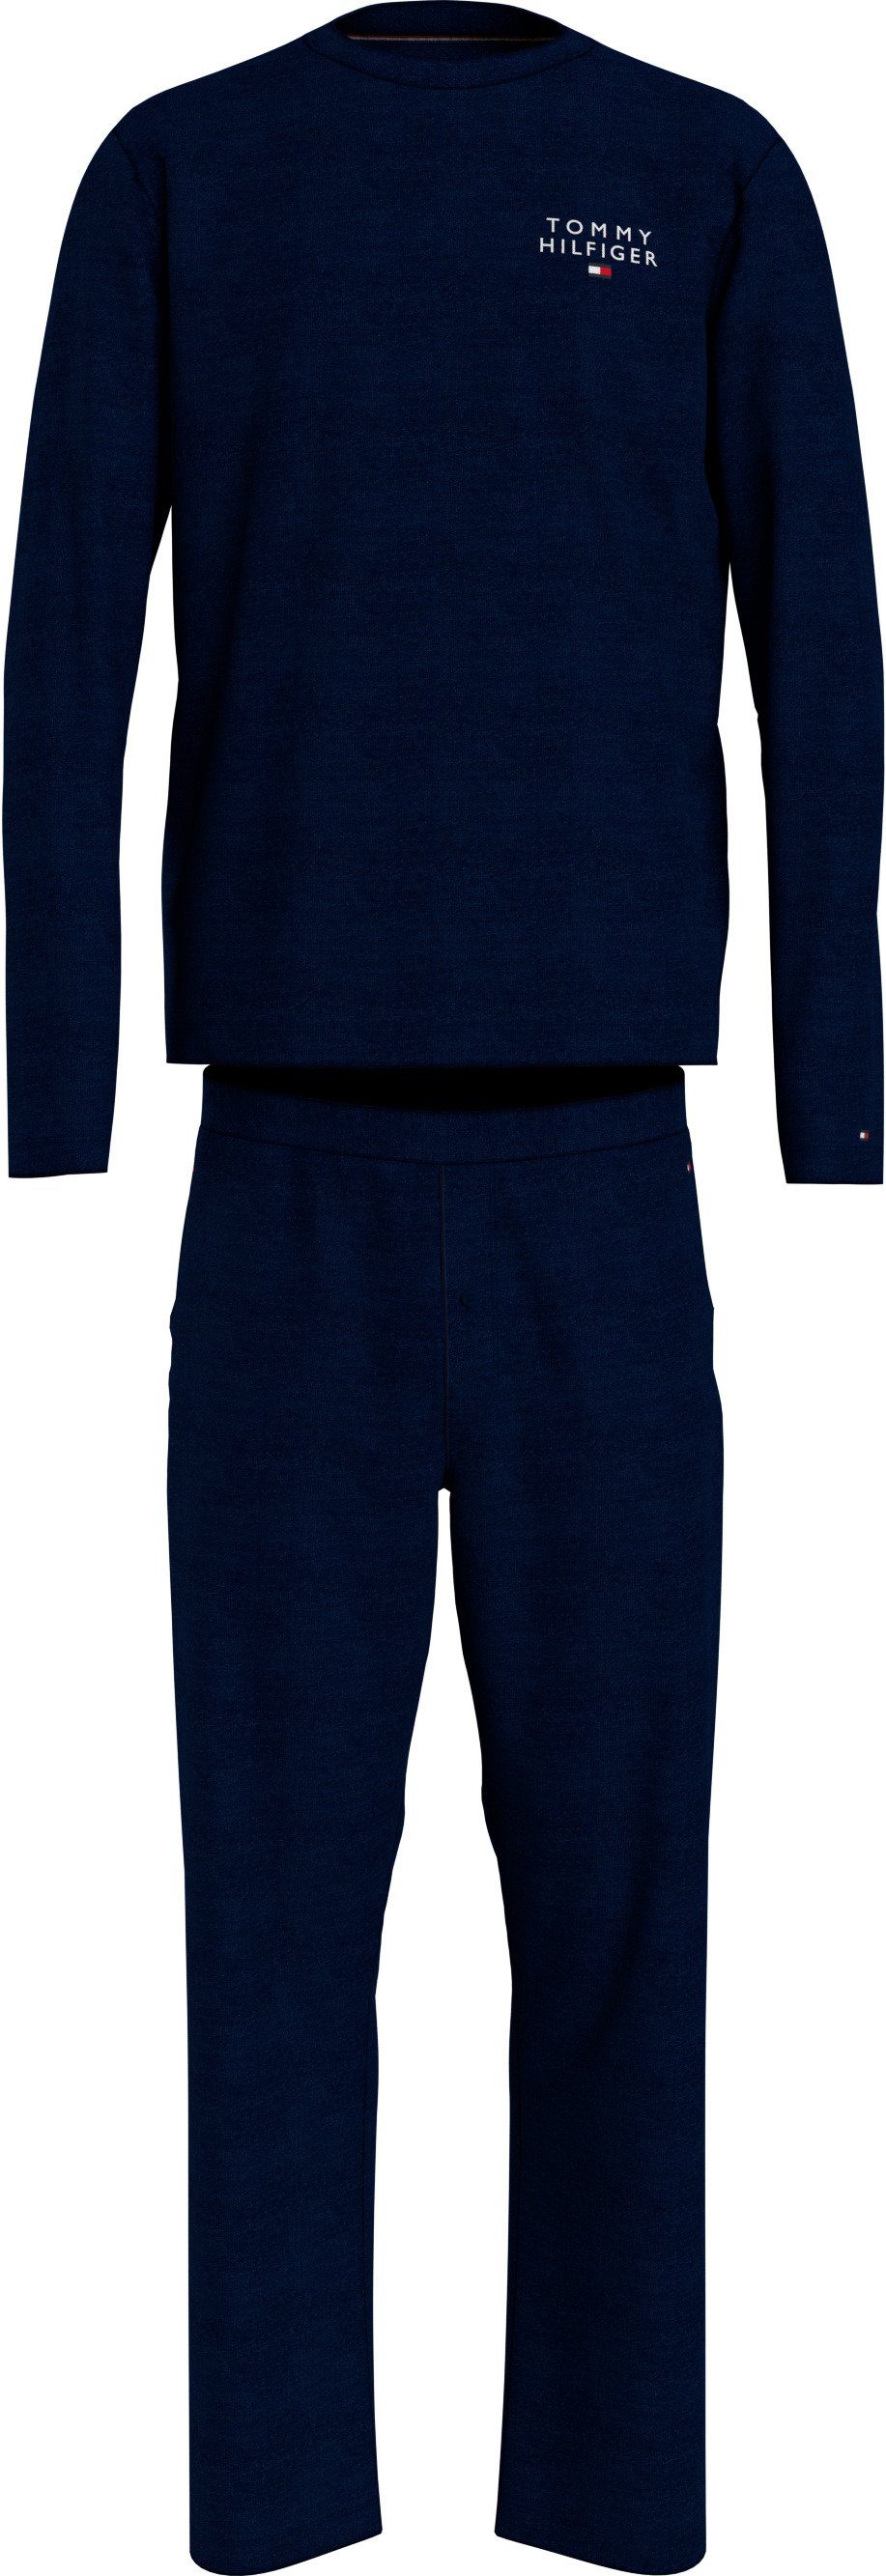 Tommy Hilfiger Underwear Schlafanzug LS PJ SET WOVEN SELF FABRIC WB (2 tlg)  mit einem Logo-Druck auf der Brust